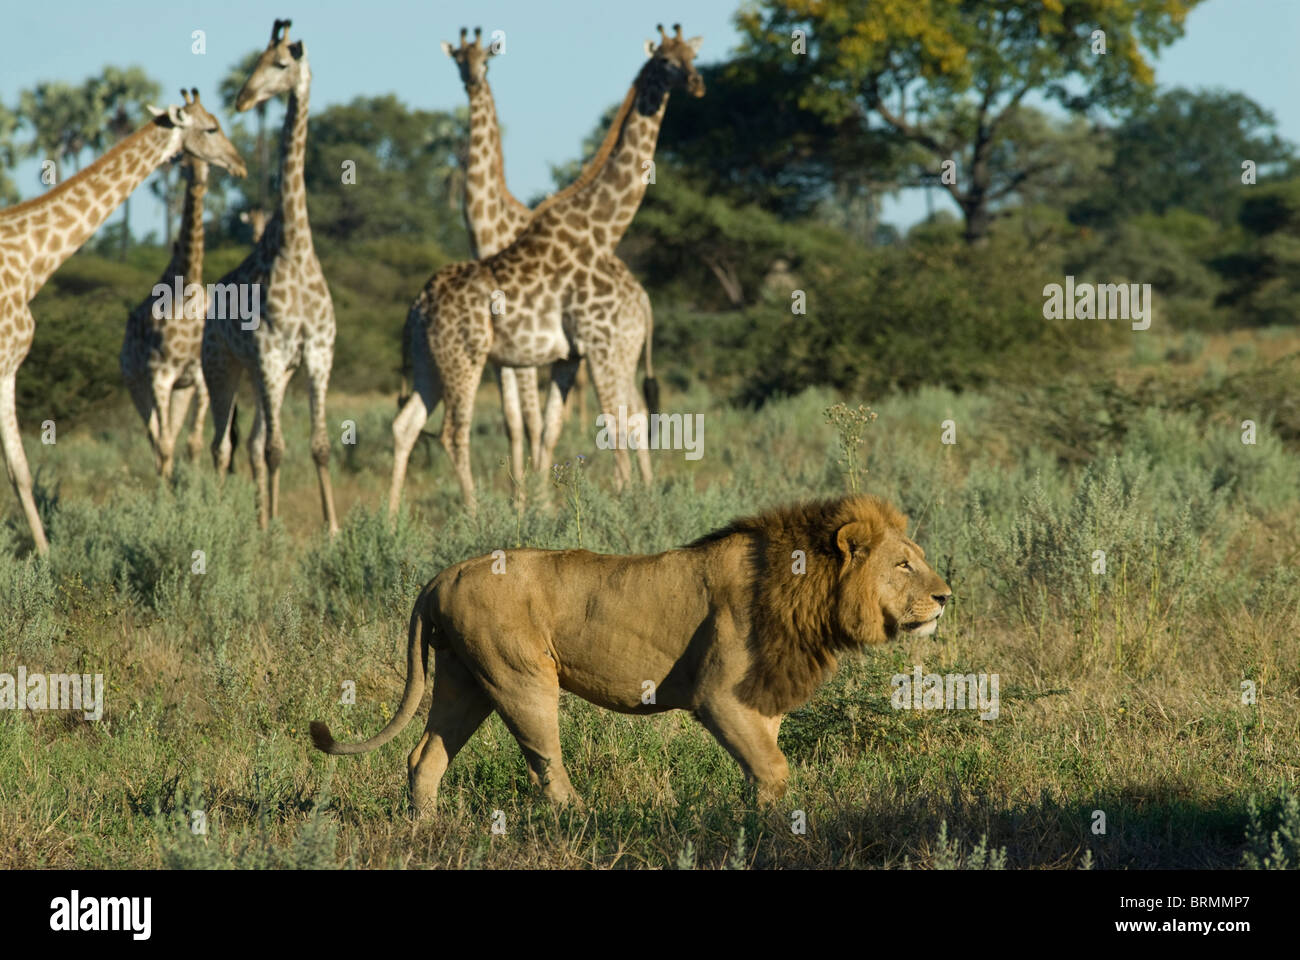 León macho caminando por una manada de jirafas Foto de stock